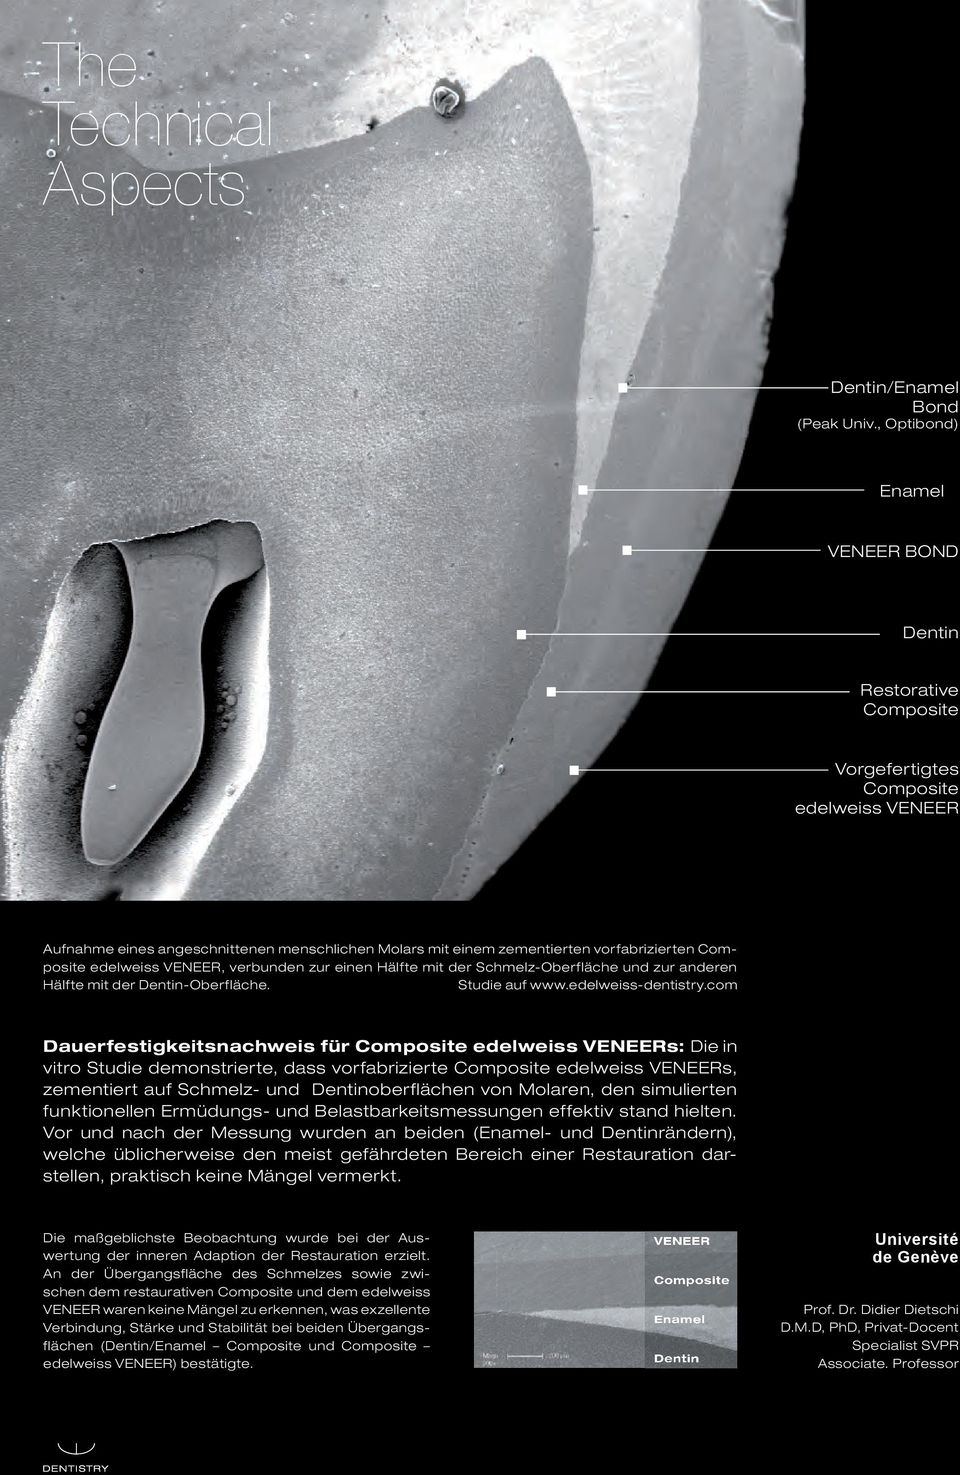 Composite edelweiss VENEER, verbunden zur einen Hälfte mit der Schmelz-Oberfläche und zur anderen Hälfte mit der Dentin-Oberfläche. Studie auf www.edelweiss-dentistry.